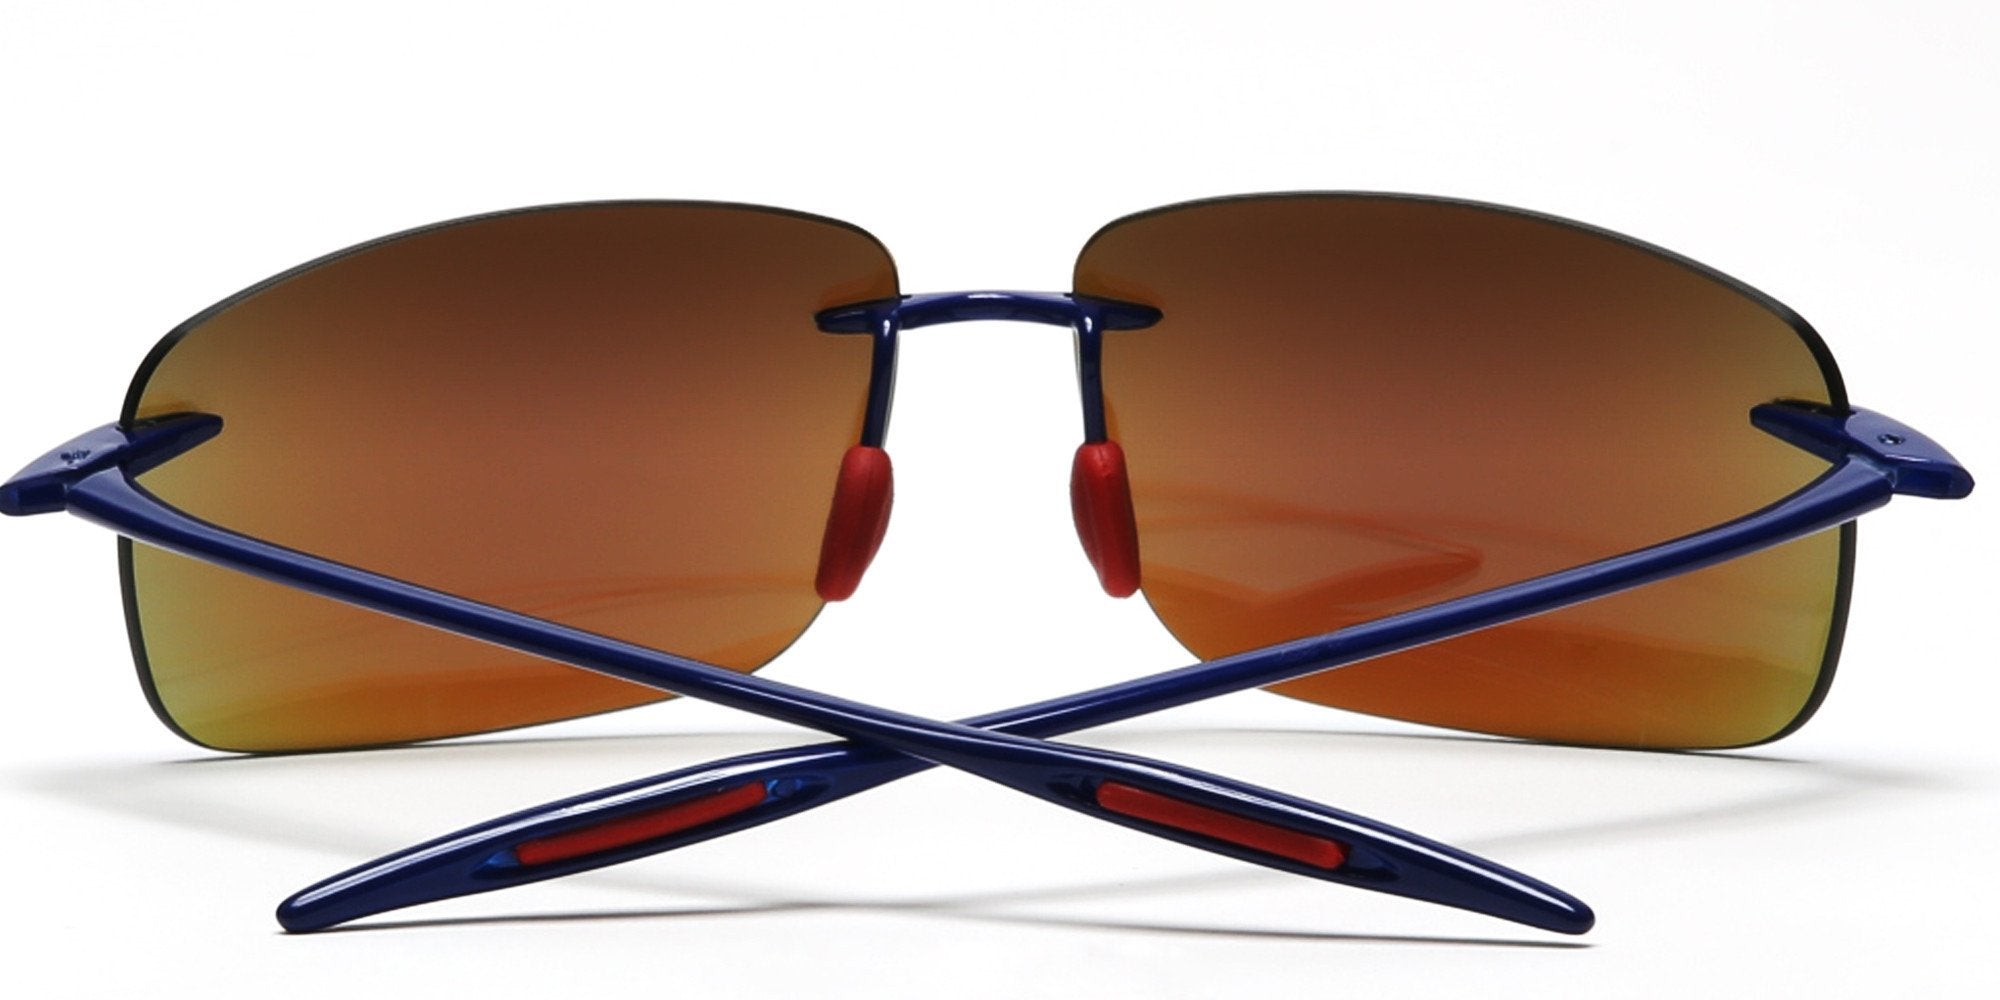 Ultra-Light Flex TR90 Sport Sunglasses Blue Mirror Lens-Samba Shades